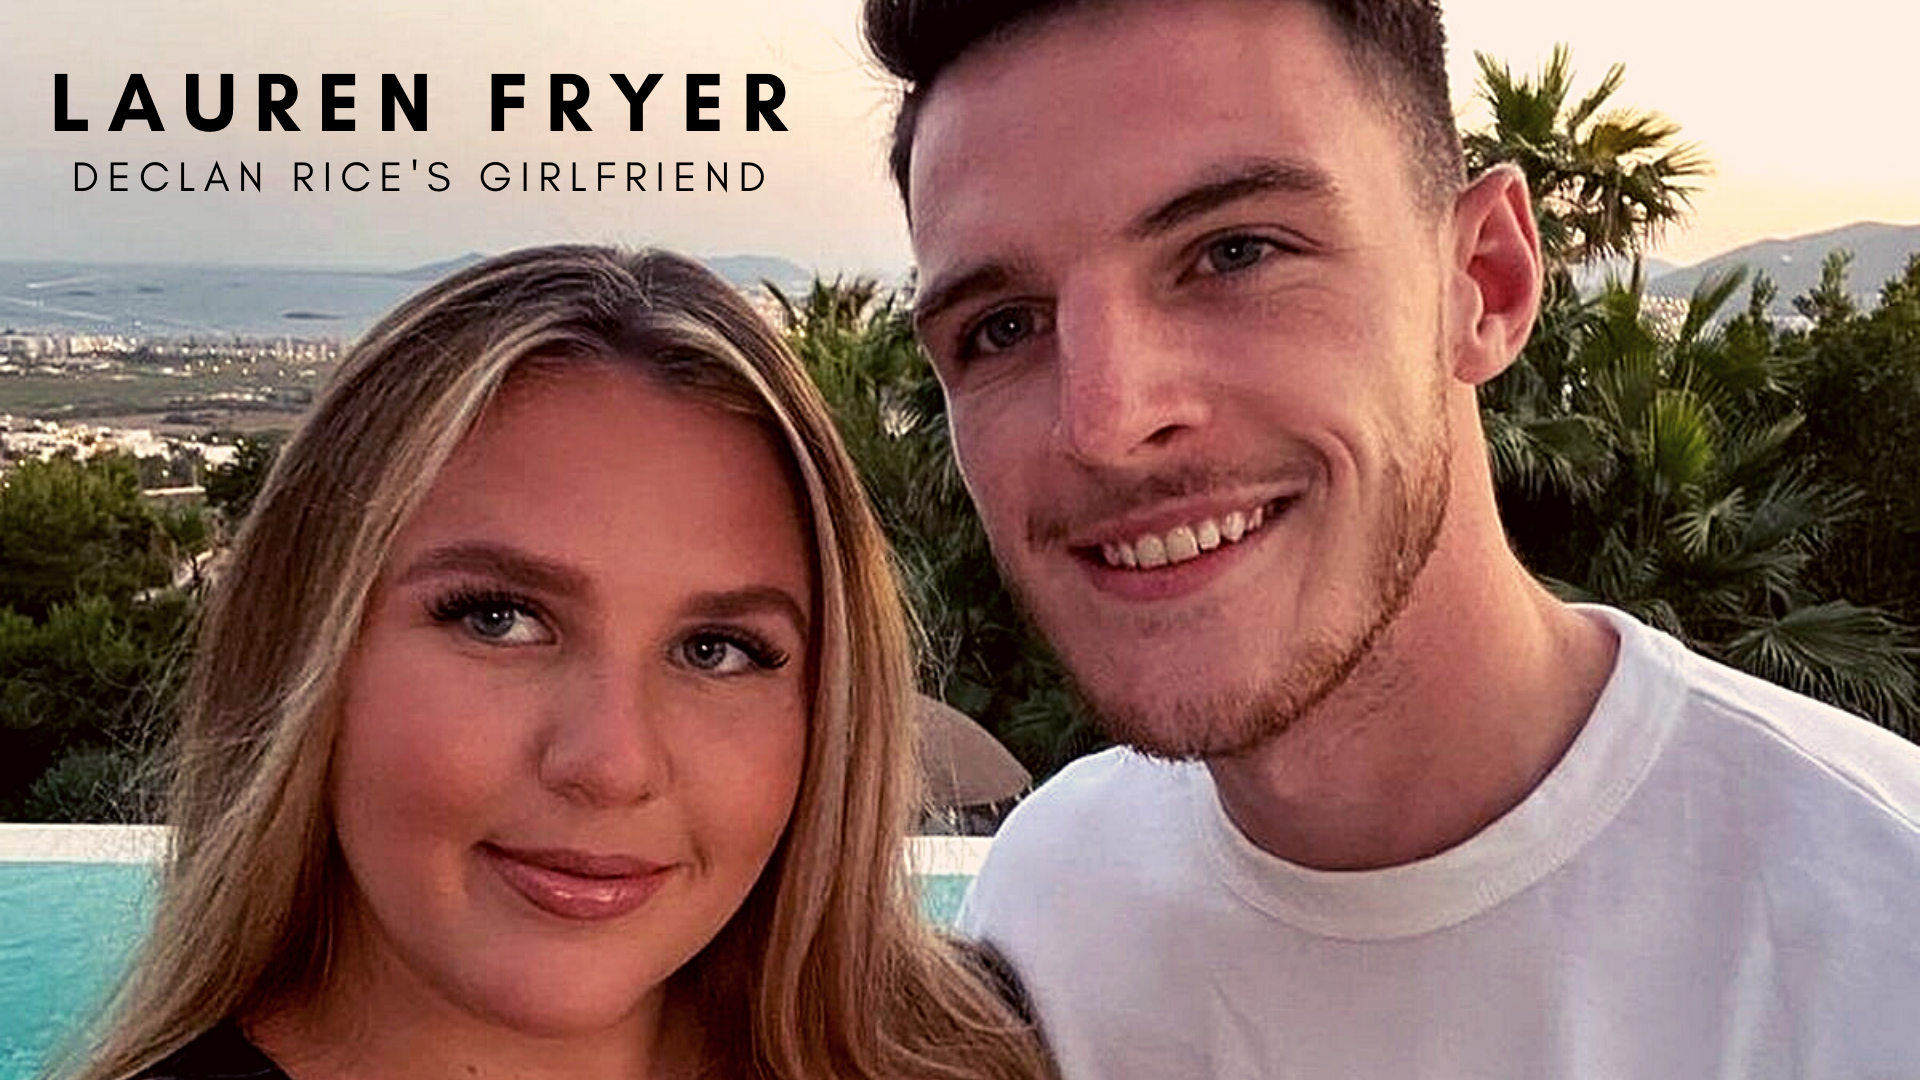 Declan Rice with girlfriend Lauren Fryer. (Credit: Instagram)